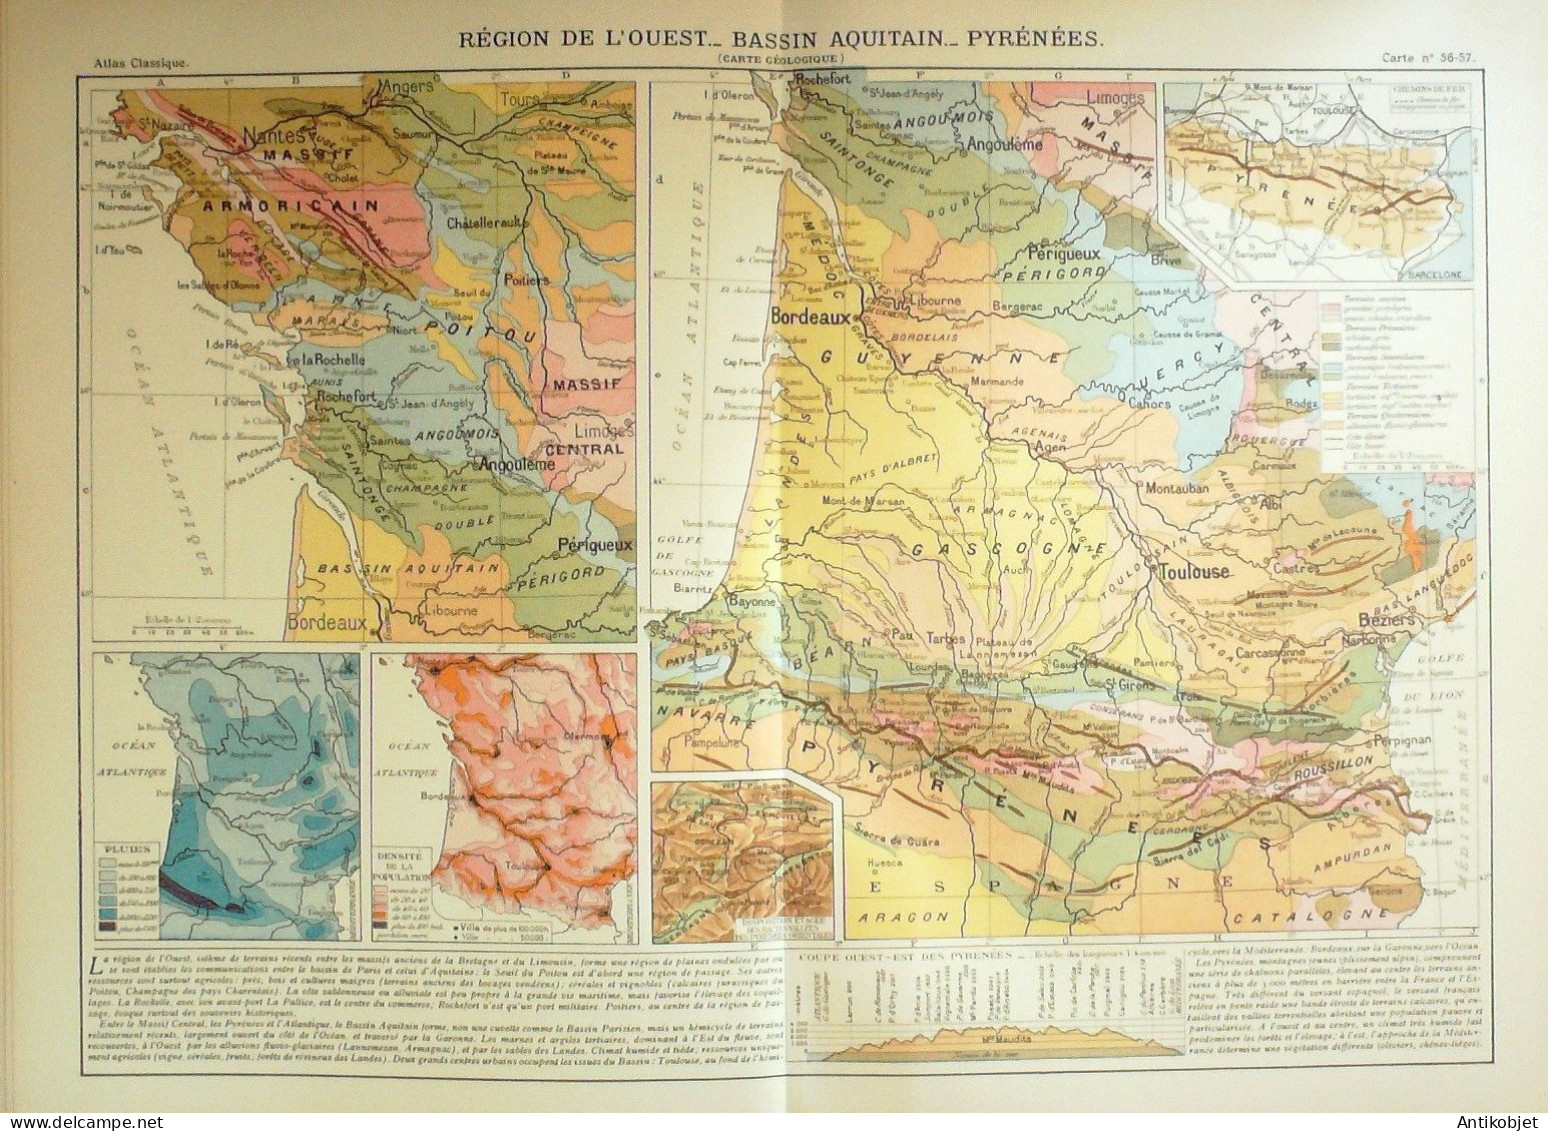 Atlas 343 cartes géographiques Srader Gallouedec (Hachette) 1931